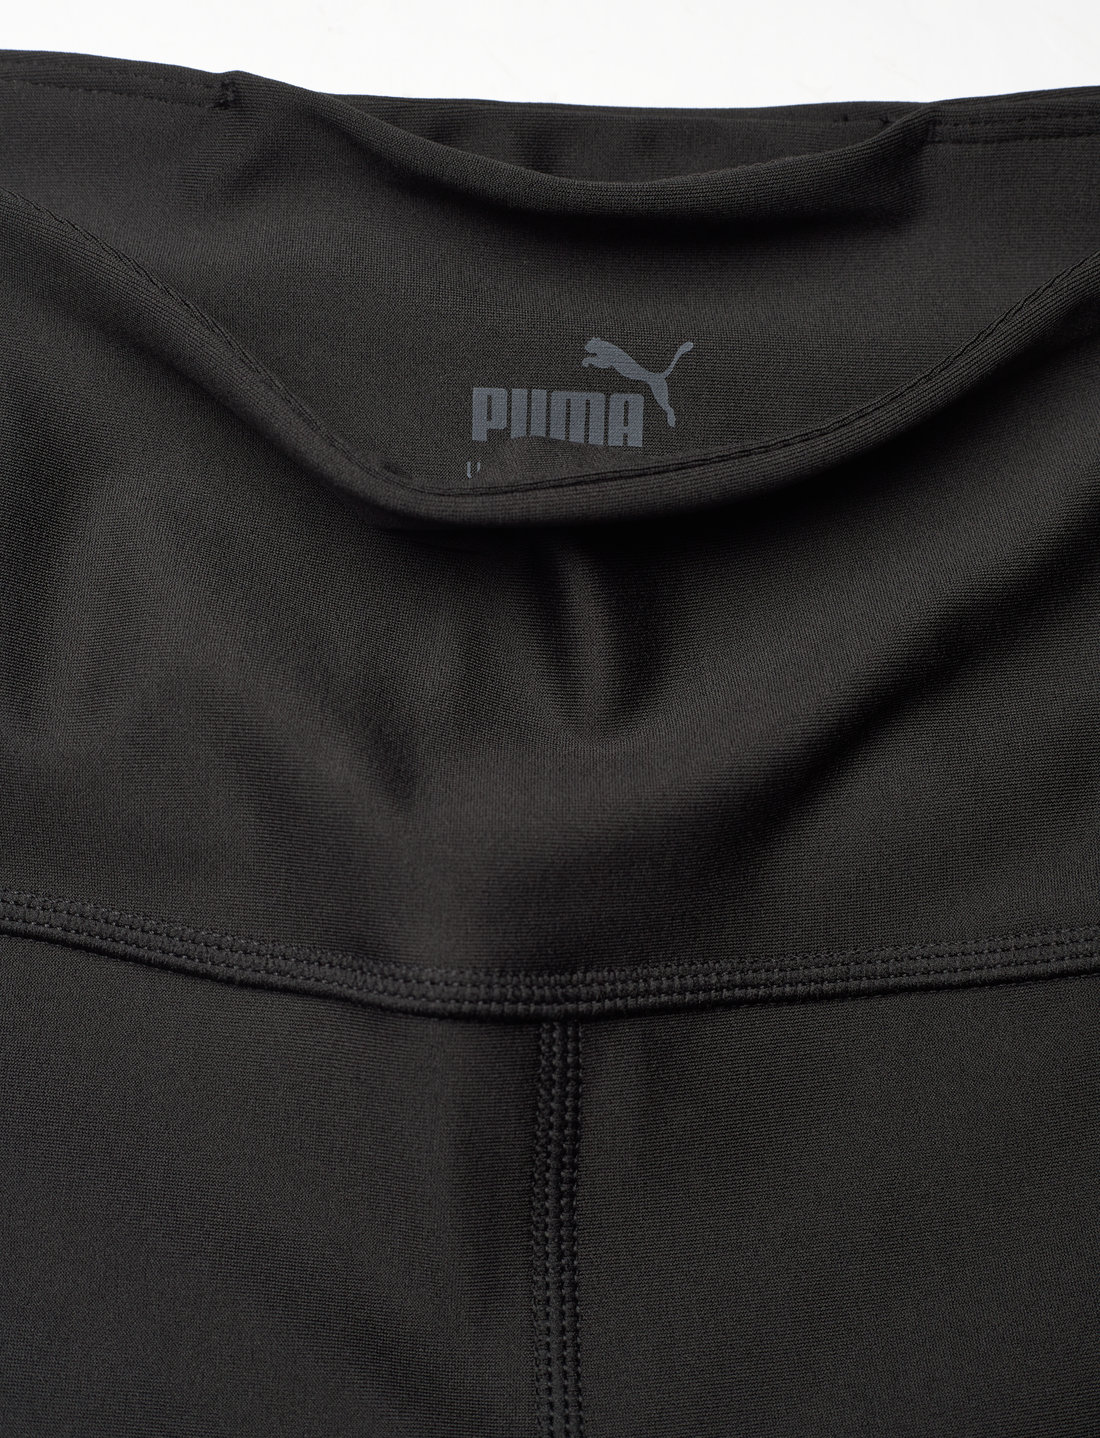 PUMA Puma Fit Eversculpt Color Block Hw 7/8 Tight - Leggings & Tights